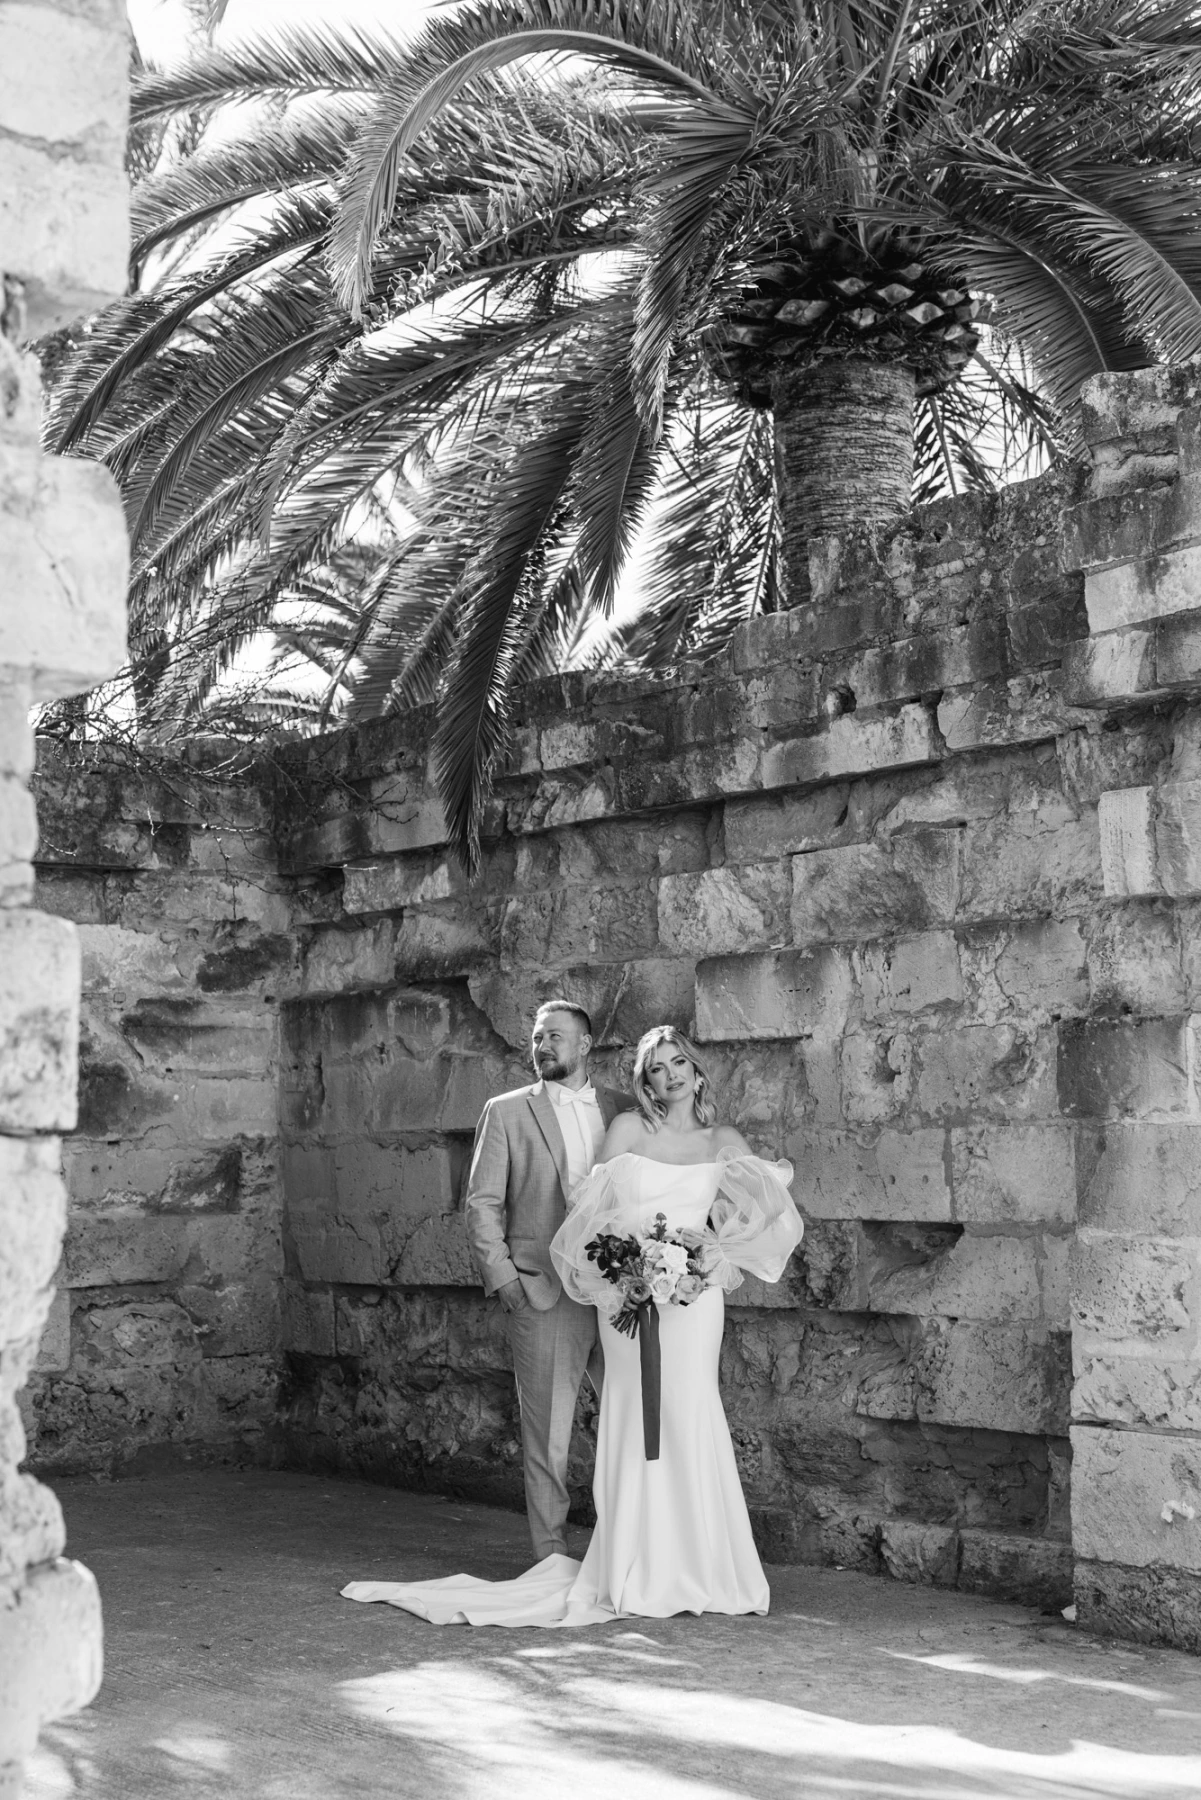 Wedding photographer Mallorca for natural wedding photos